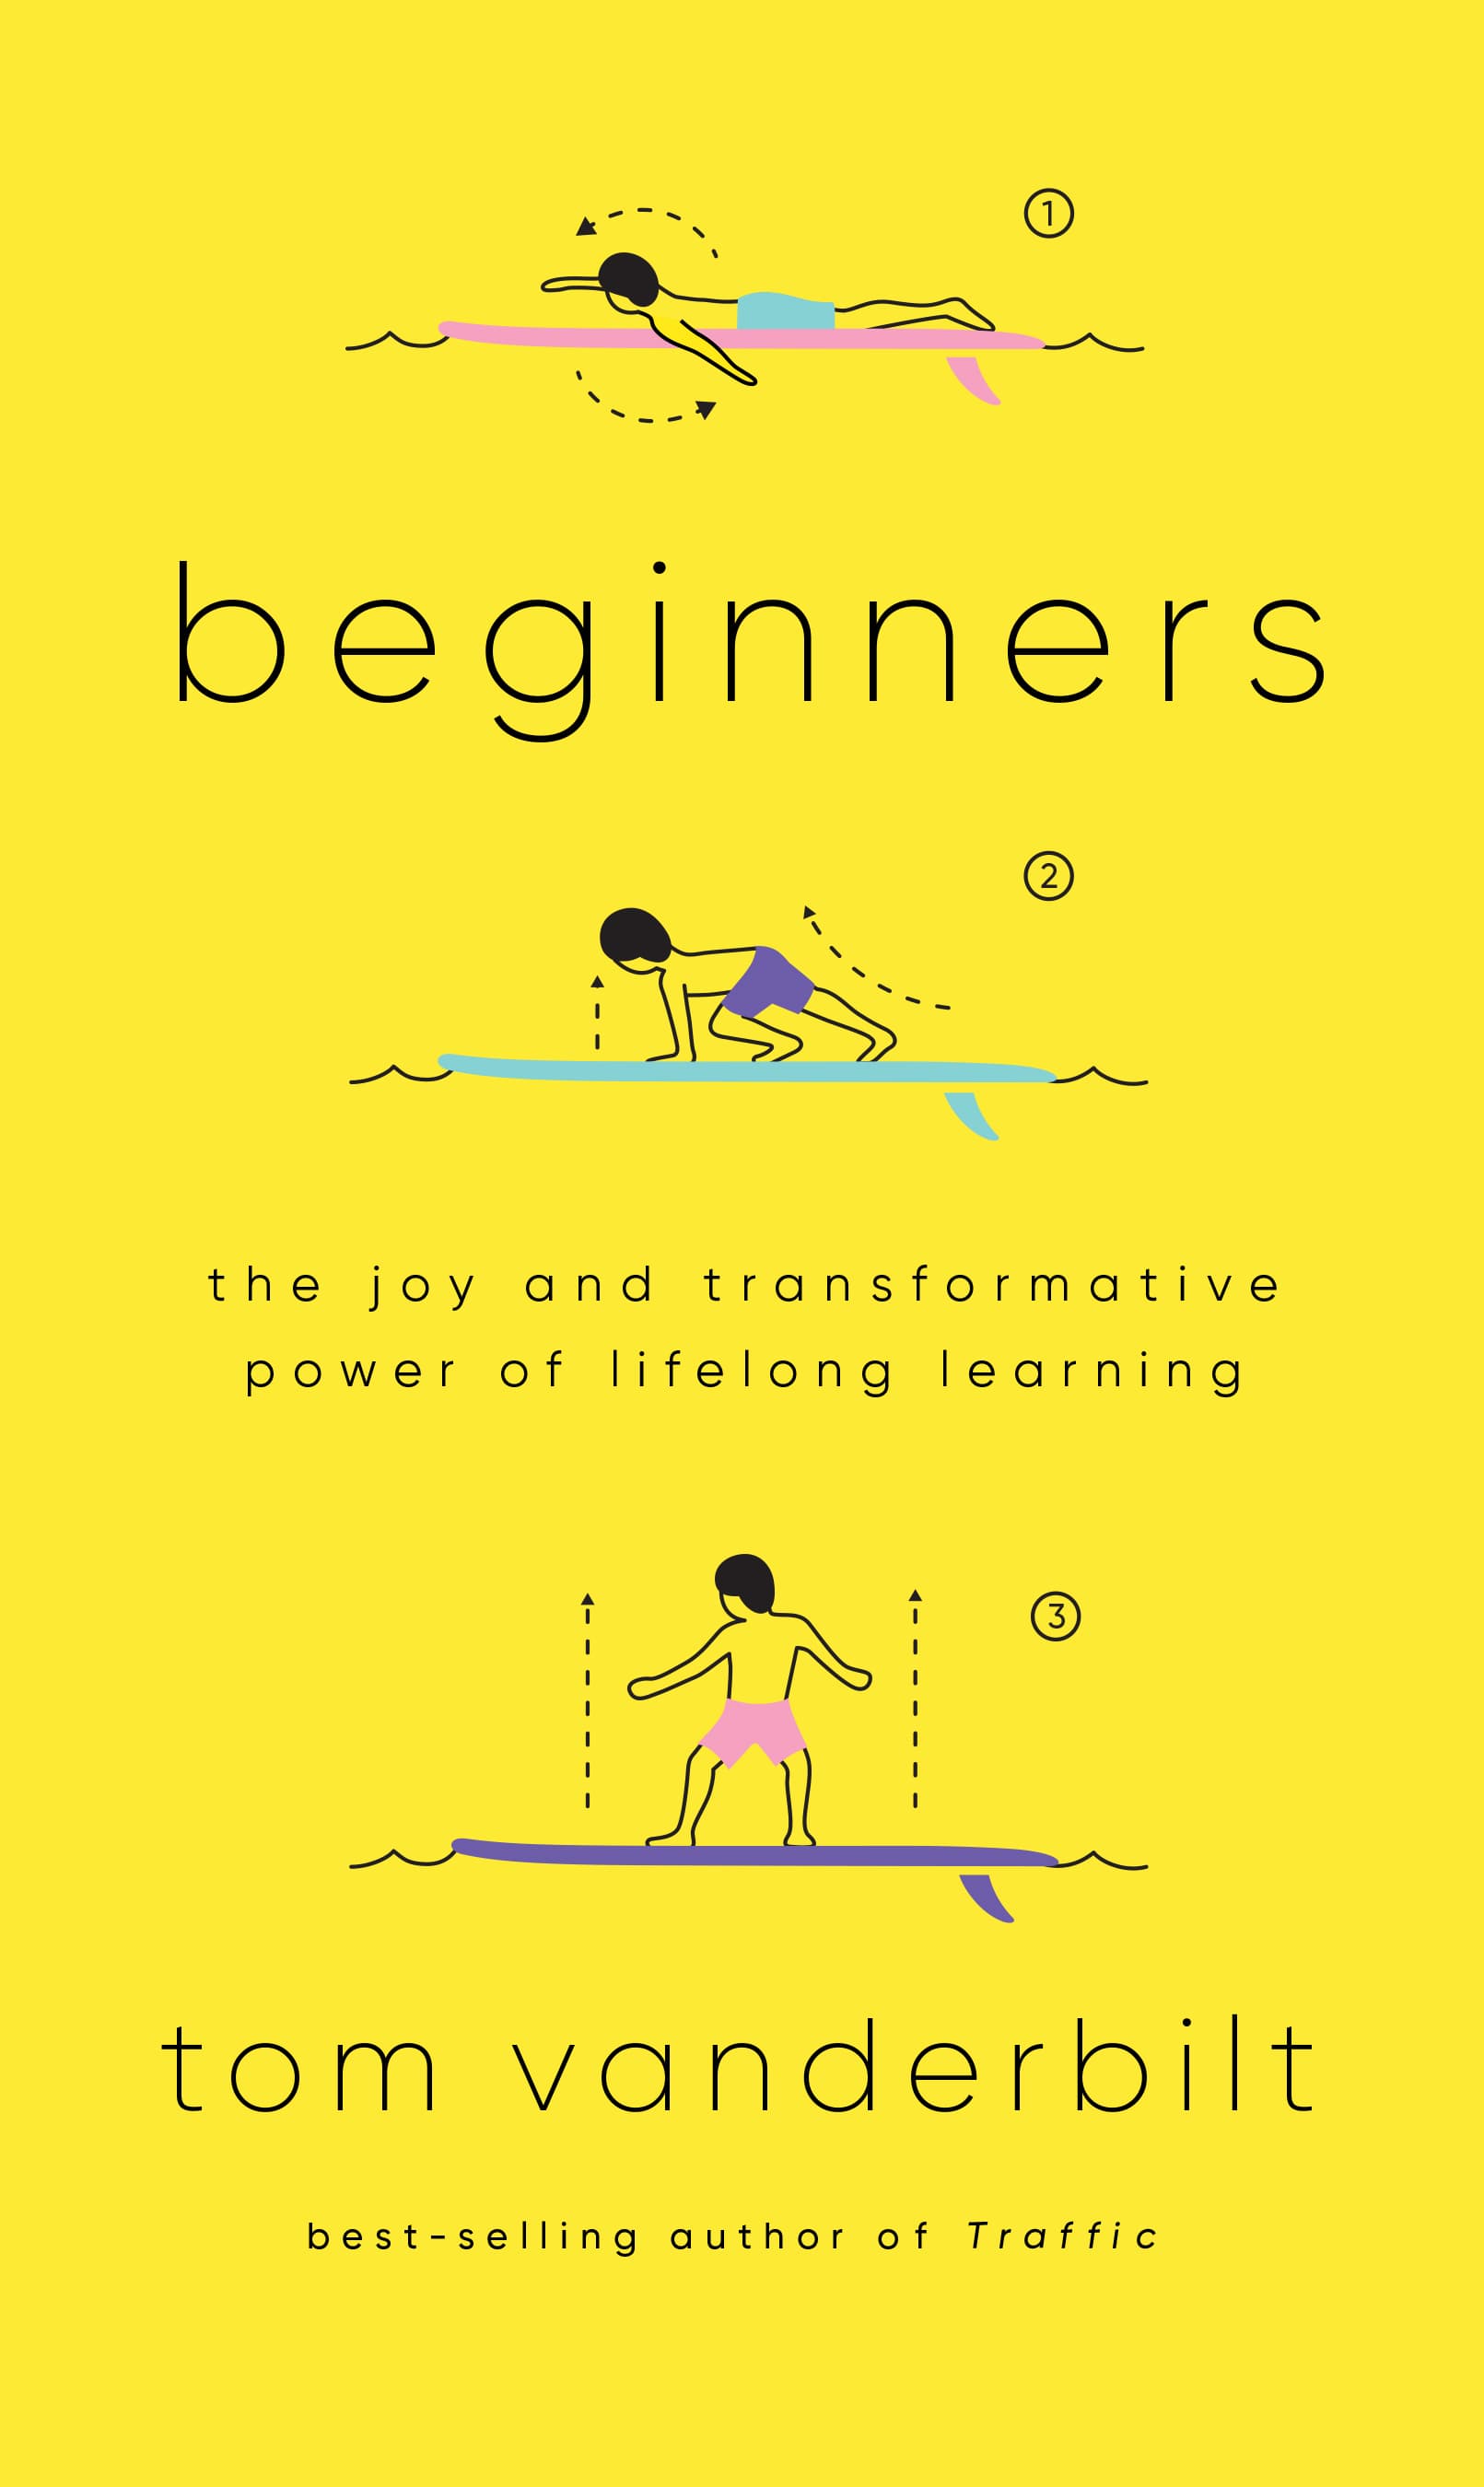 Book cover of Beginners by Tom Vanderbilt